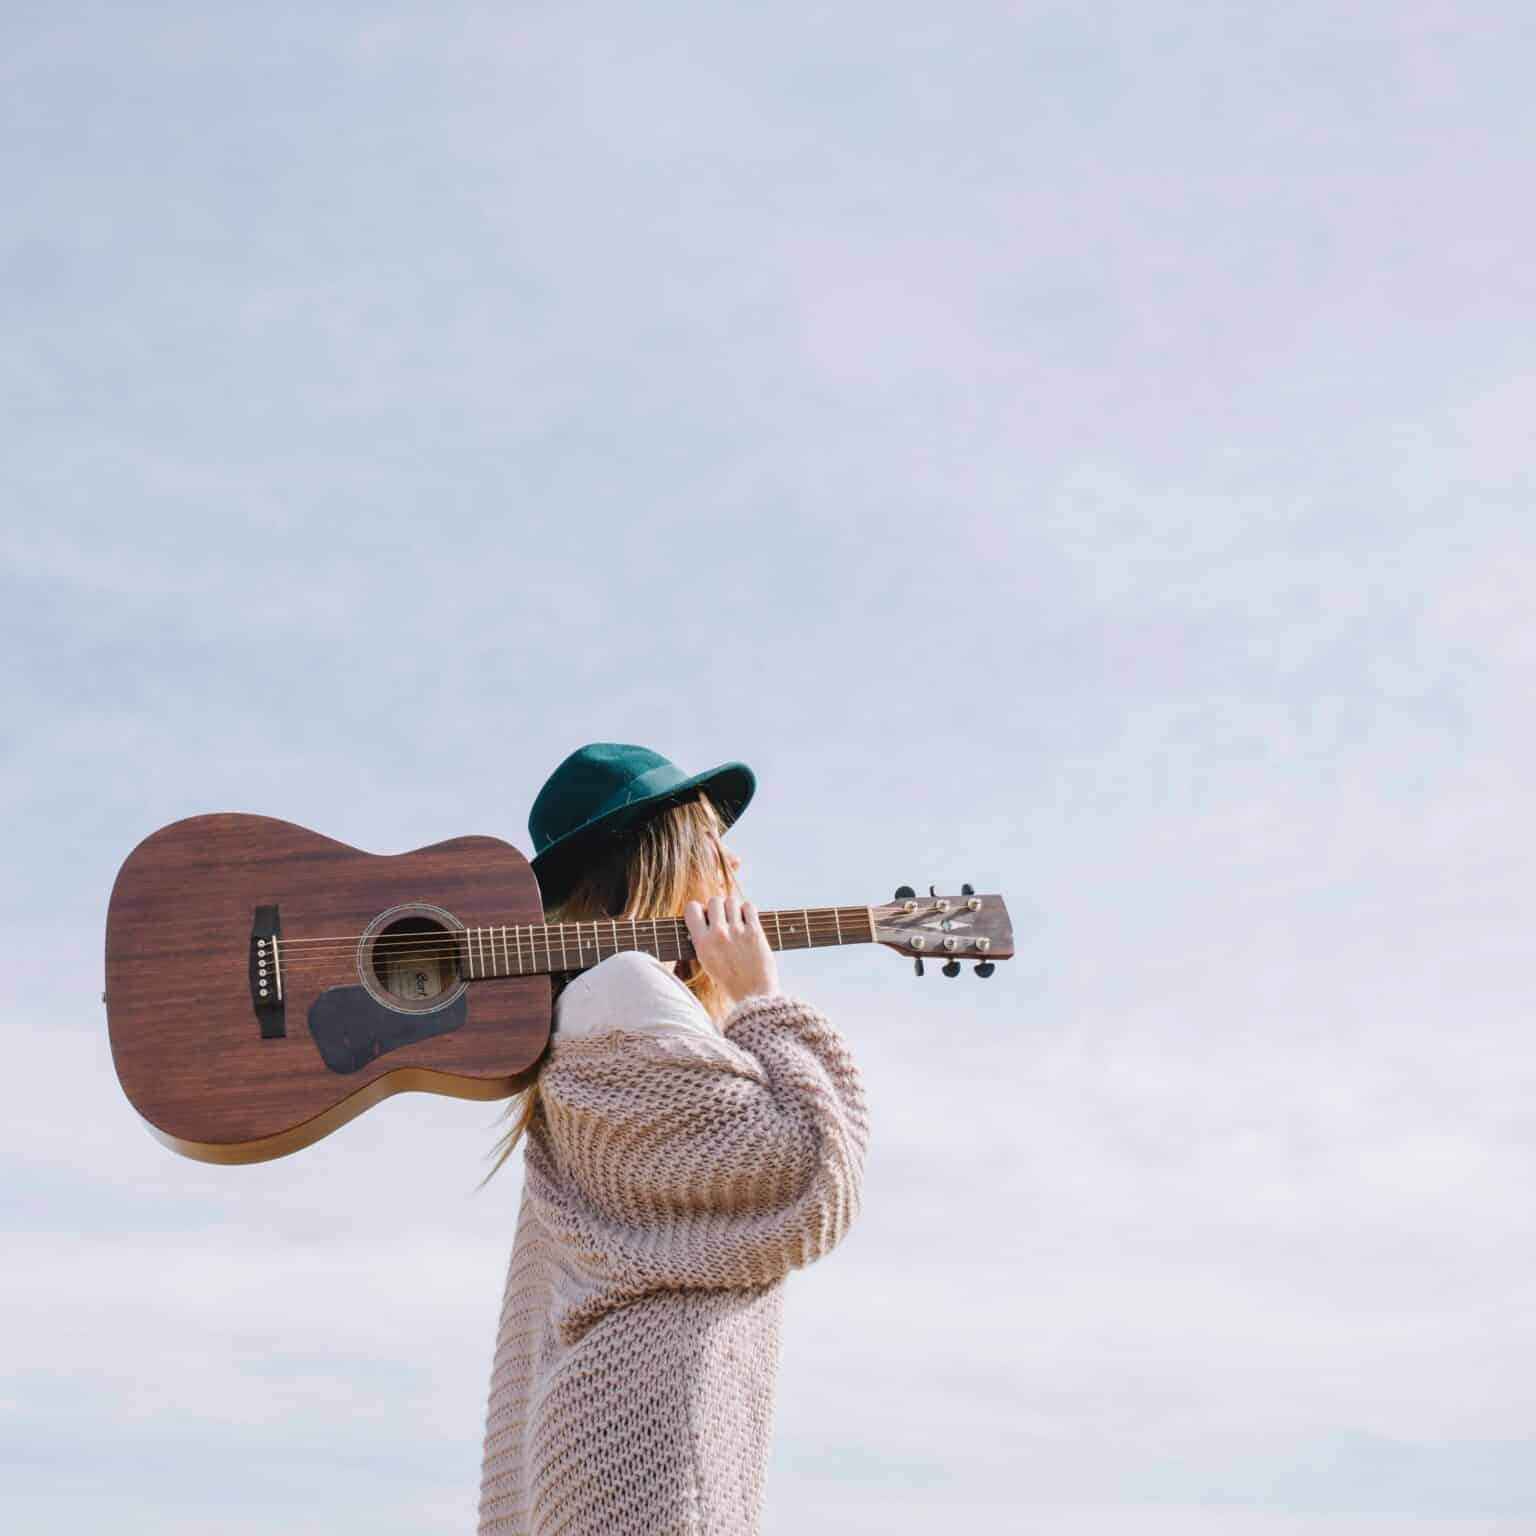 Pildil on naine, kes hoiab õla peal tumepruuni akustilist kitarri. Tal on seljas beež kampsun ja peas rohekas kübar. Taustal paistab helesinine taevas.